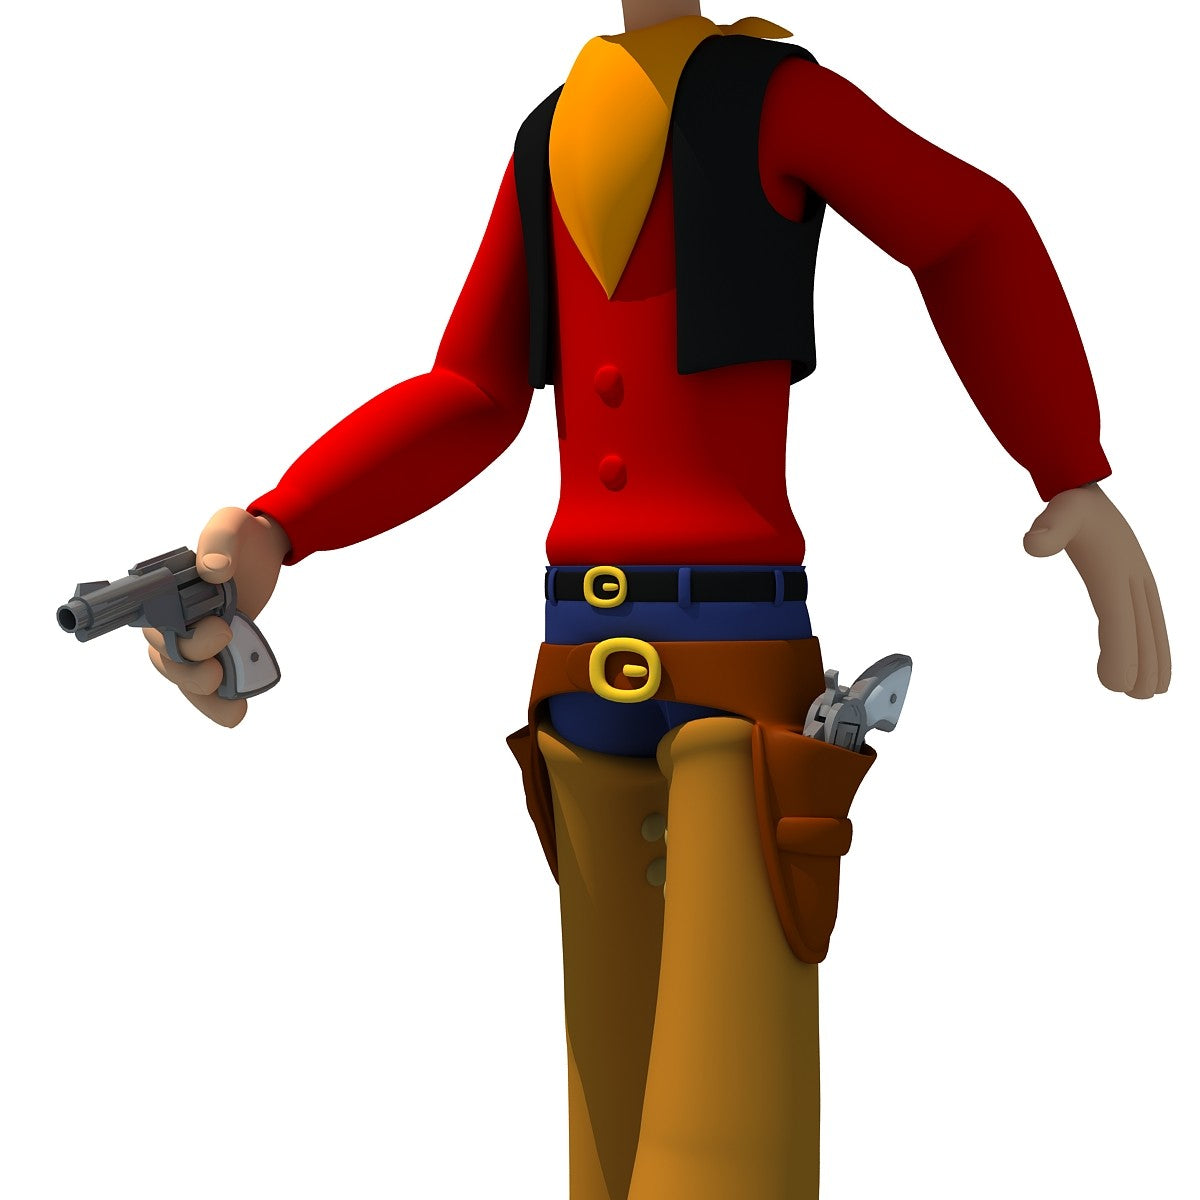 Rigged Cartoon Cowboy 3D Model